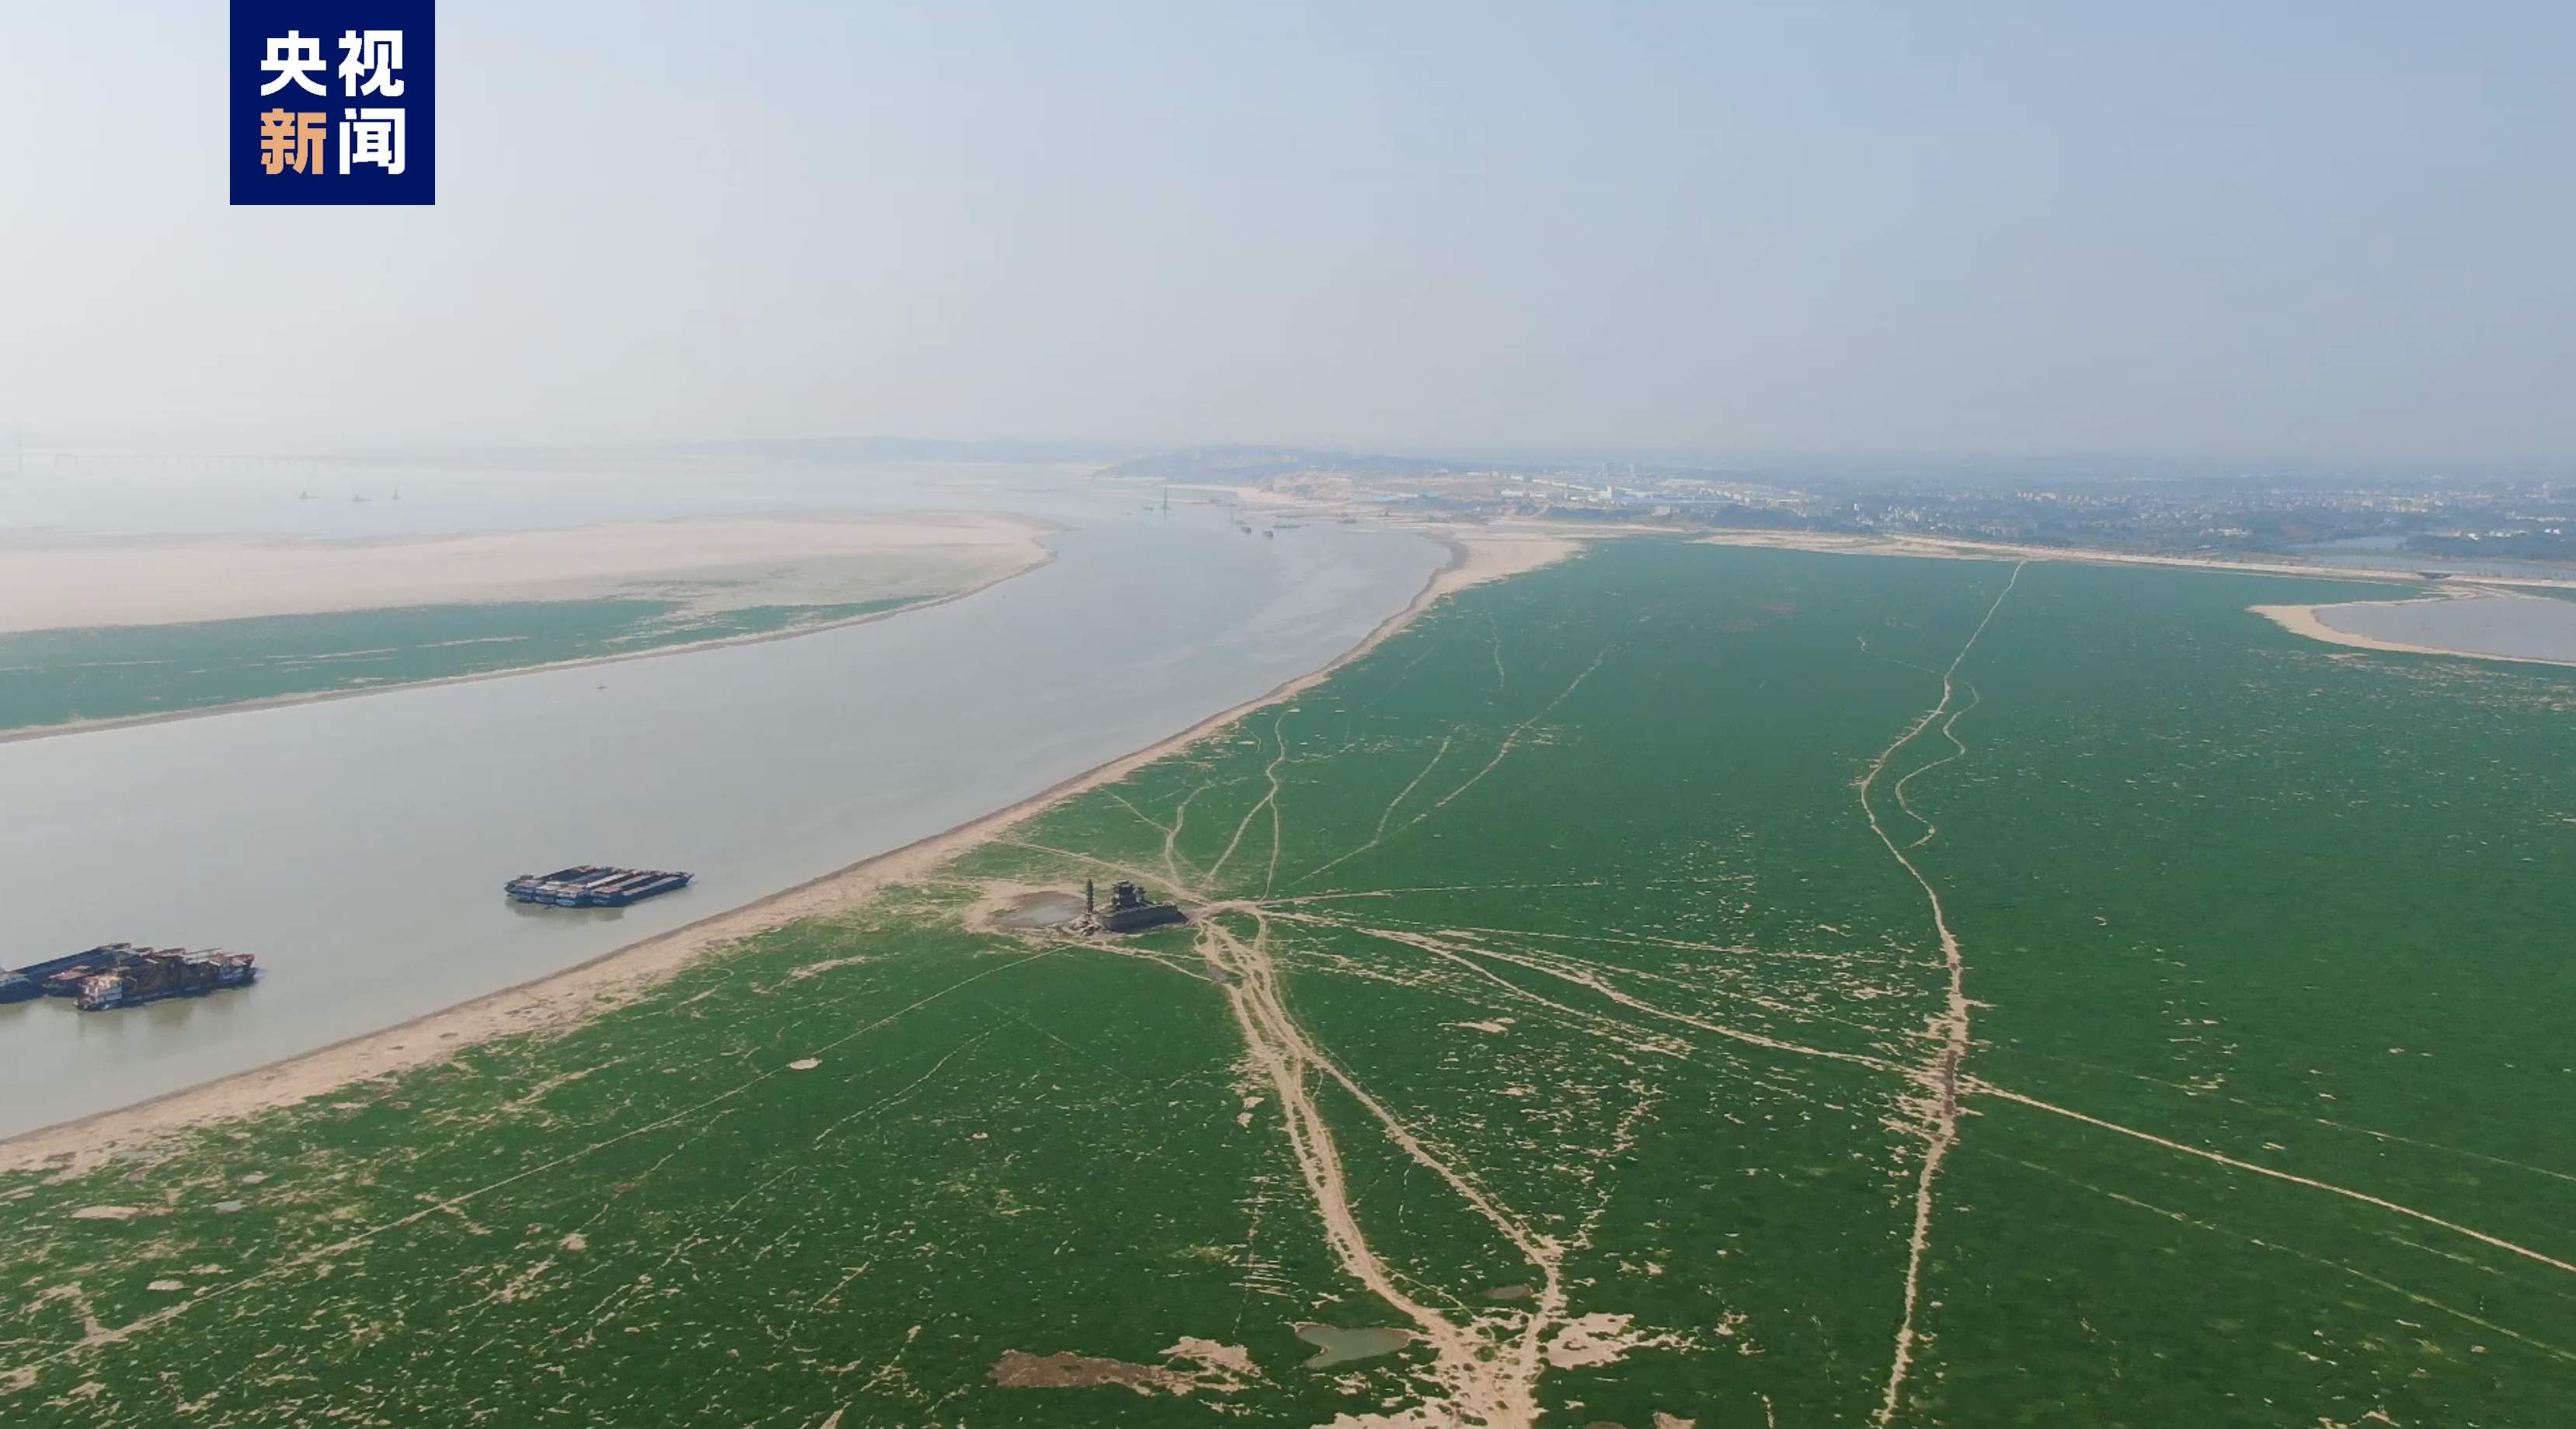 鄱阳湖刷新最早进入低枯水期纪录